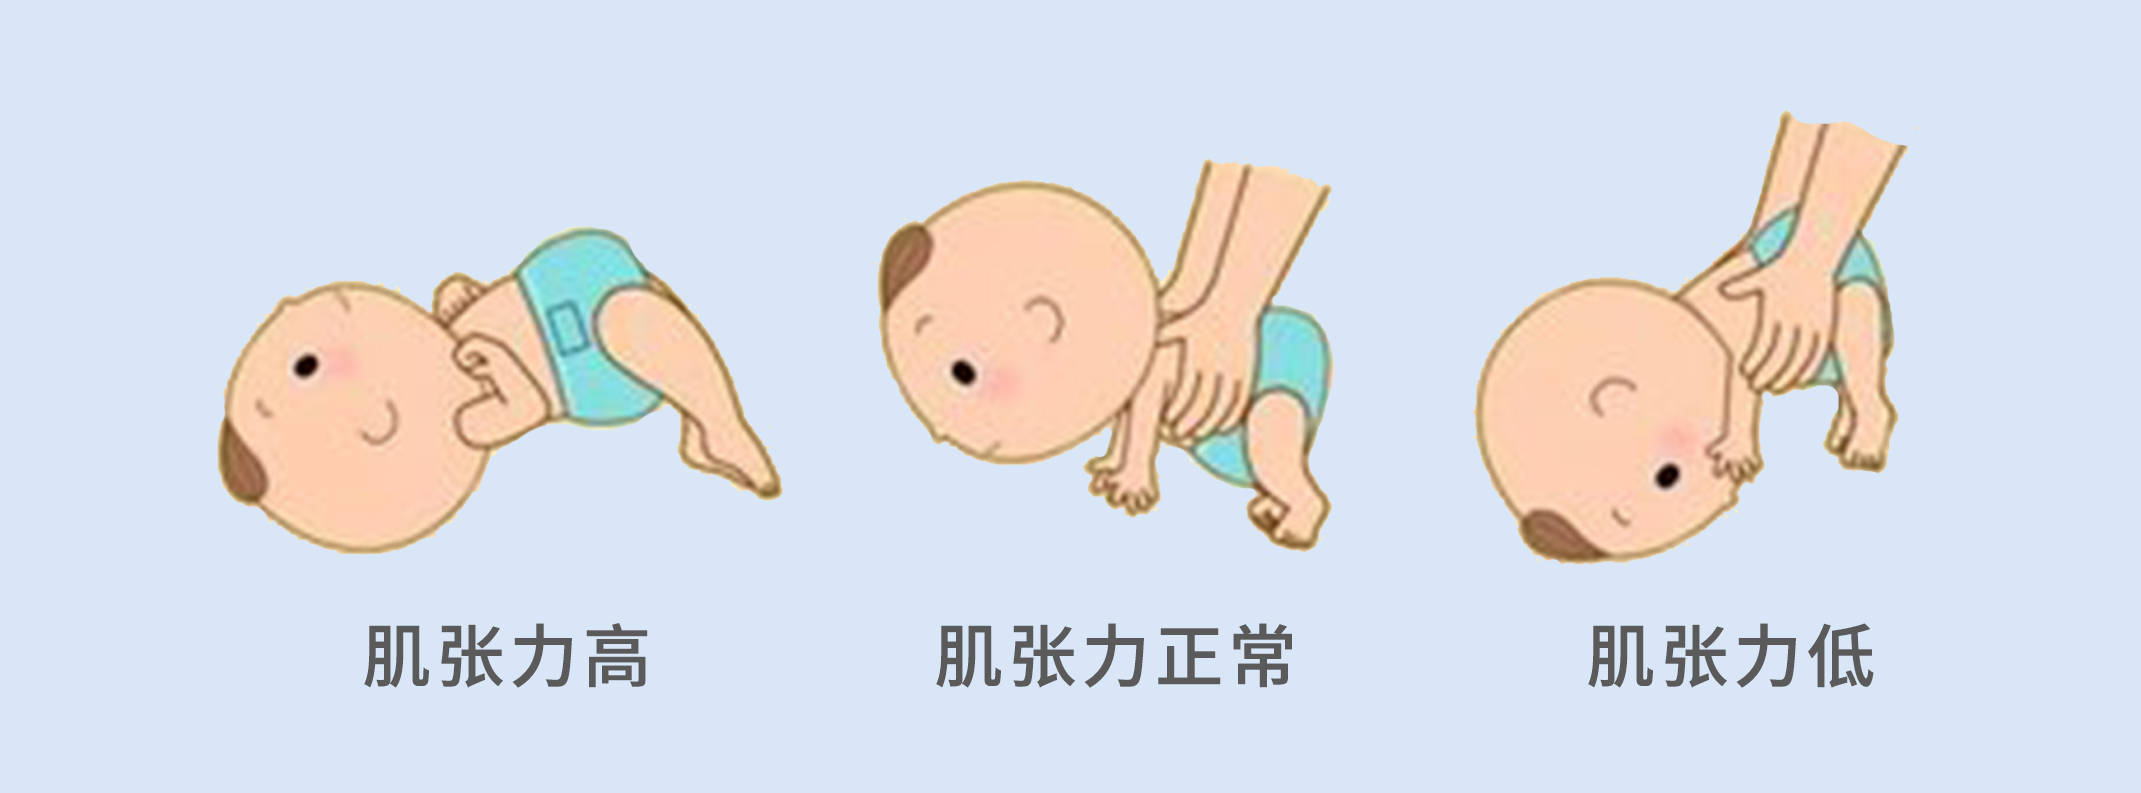 婴儿背部肌张力高图片图片